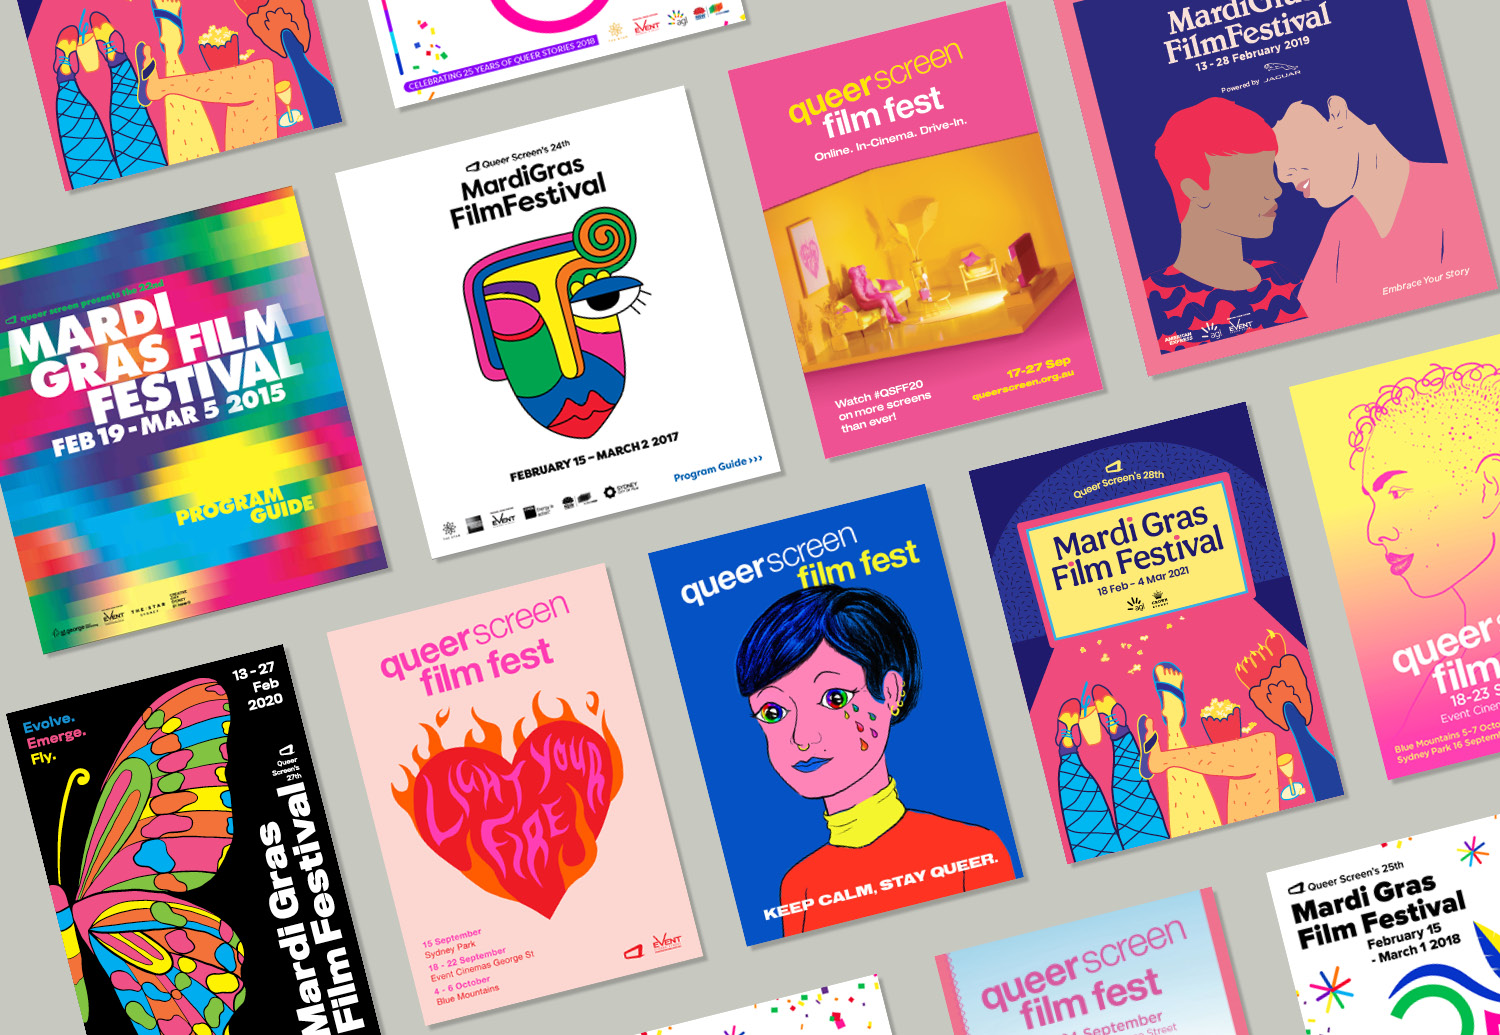 Mardi Gras Film Festival Sydney campaign designs by Missy Dempsey